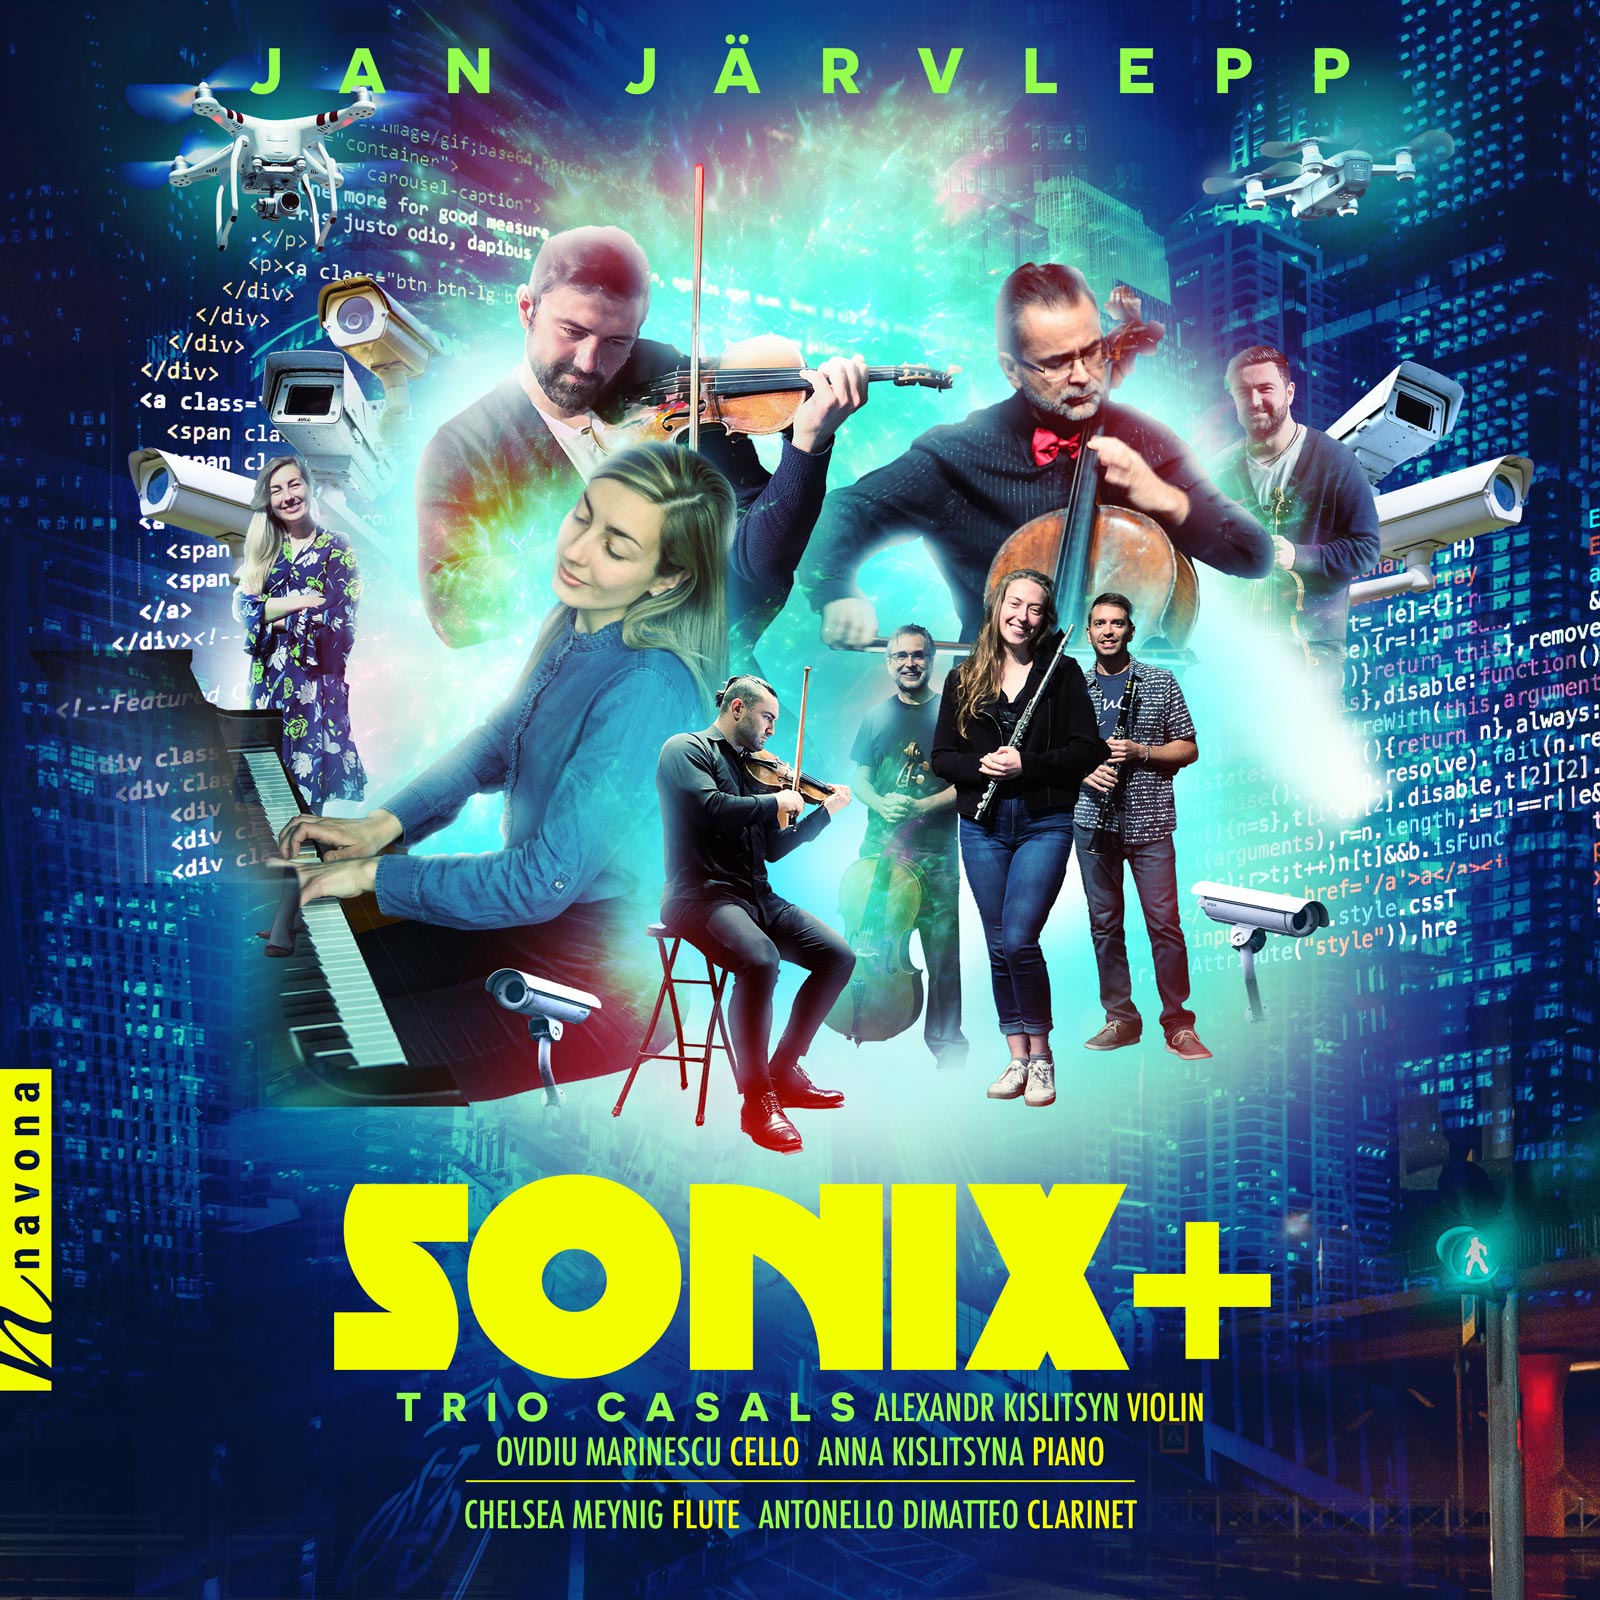 Sonix+ - album cover